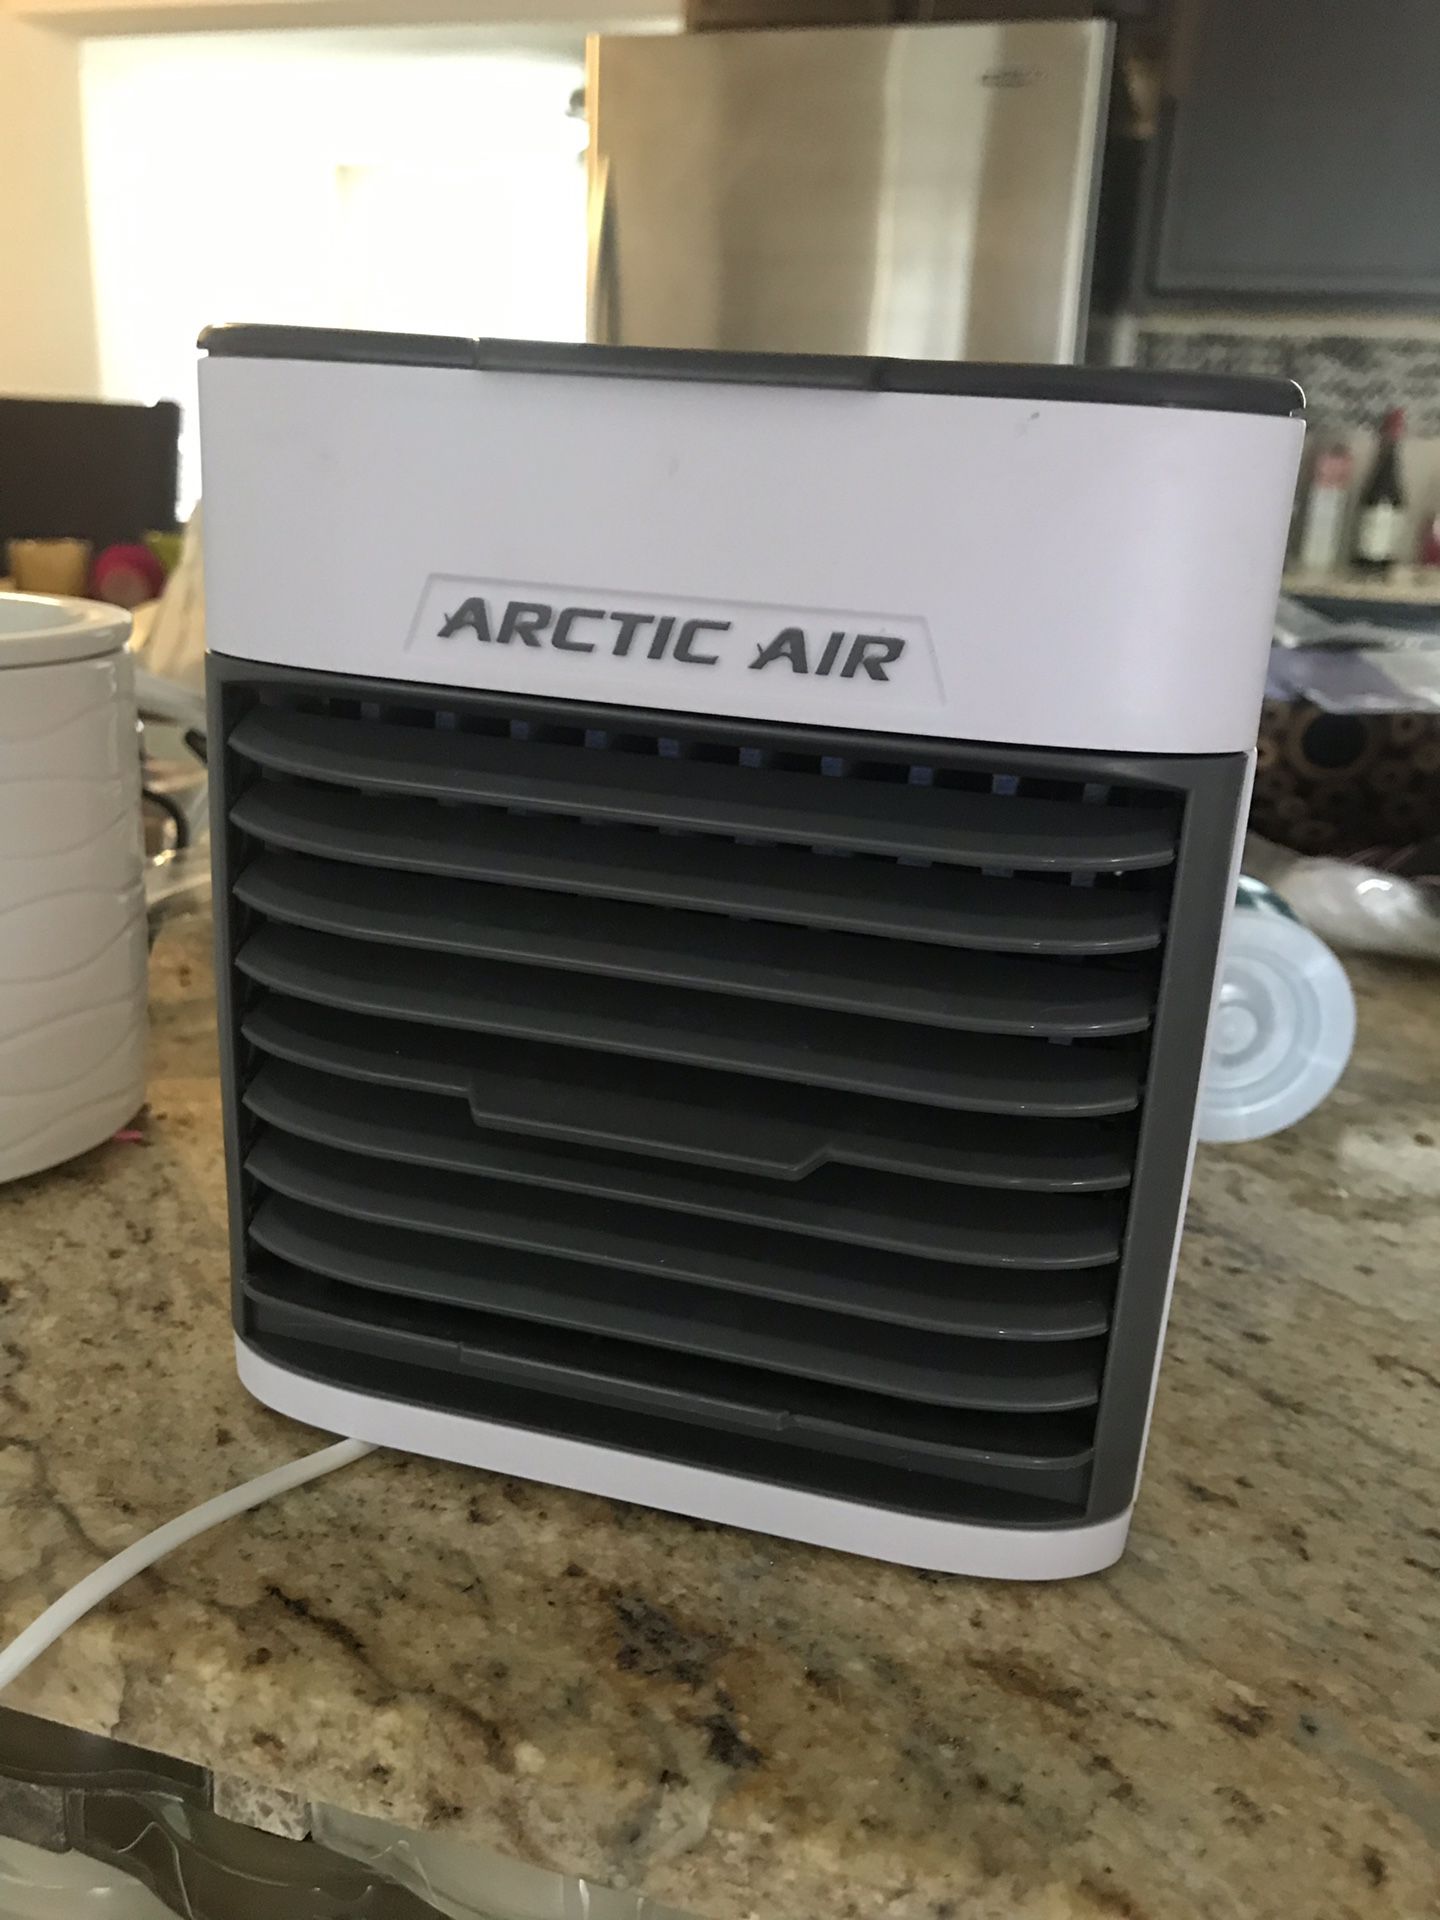 Arctic Air evaporative air cooler